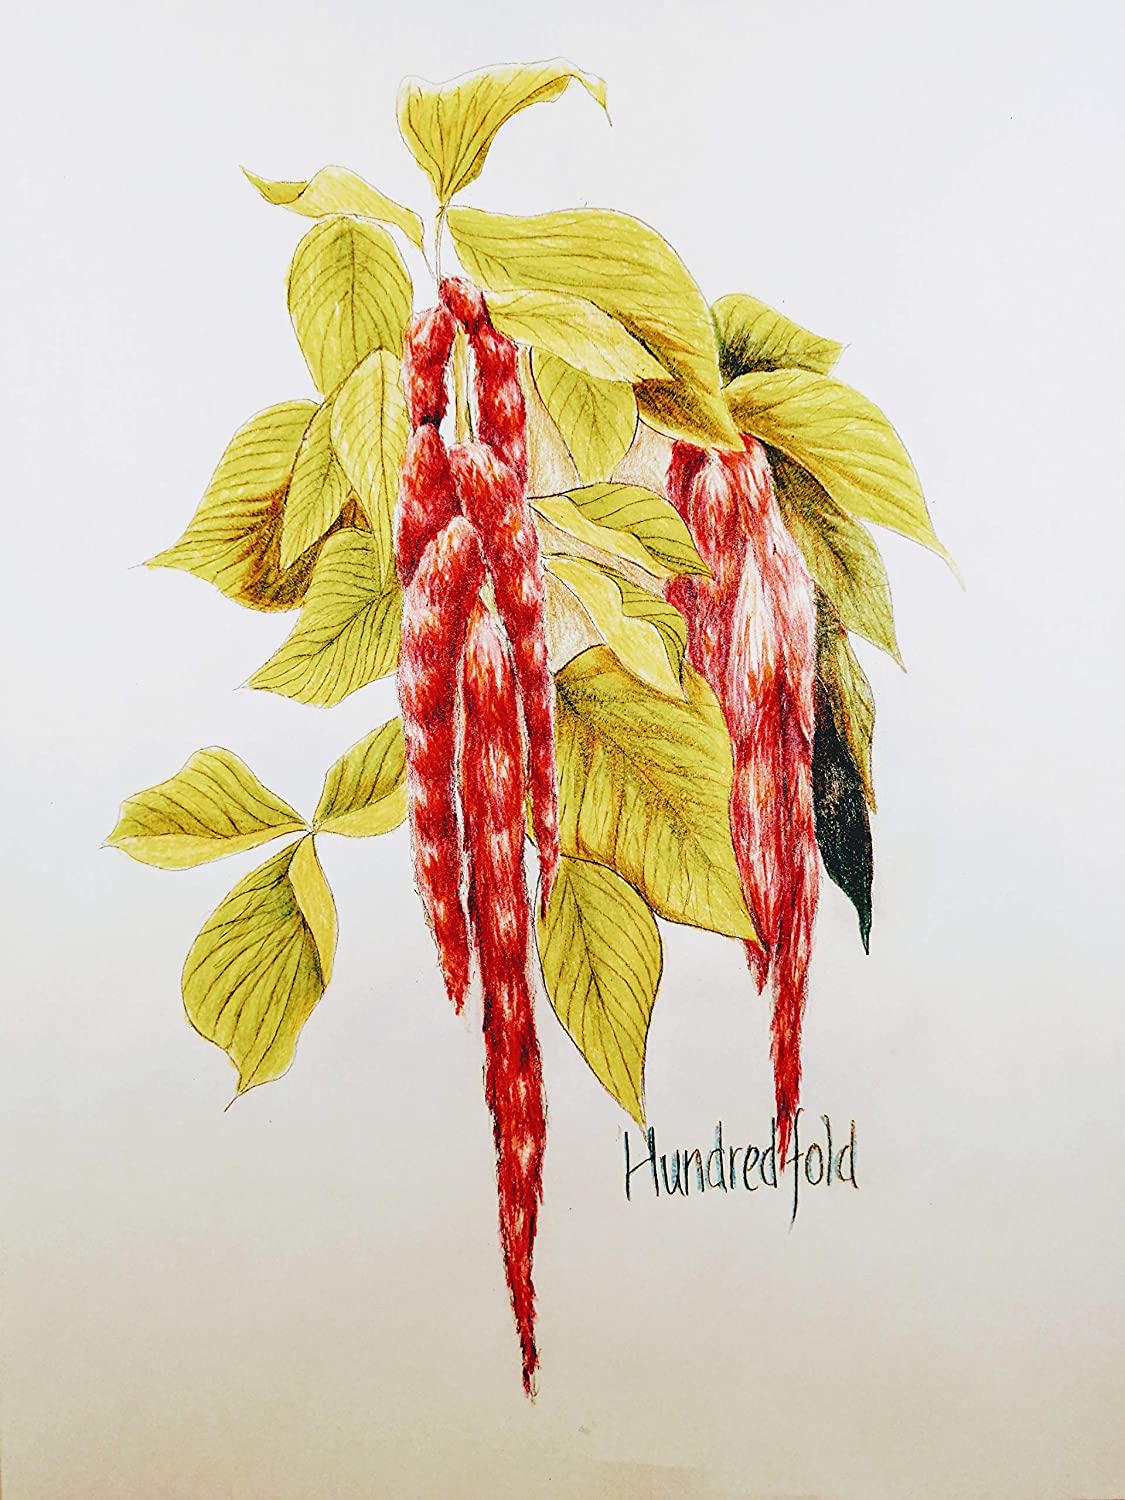 Hundredfold Love Lies Bleeding Amaranth 1000 Seeds – Amaranthus caudatus, Heirloom Tassel Flower